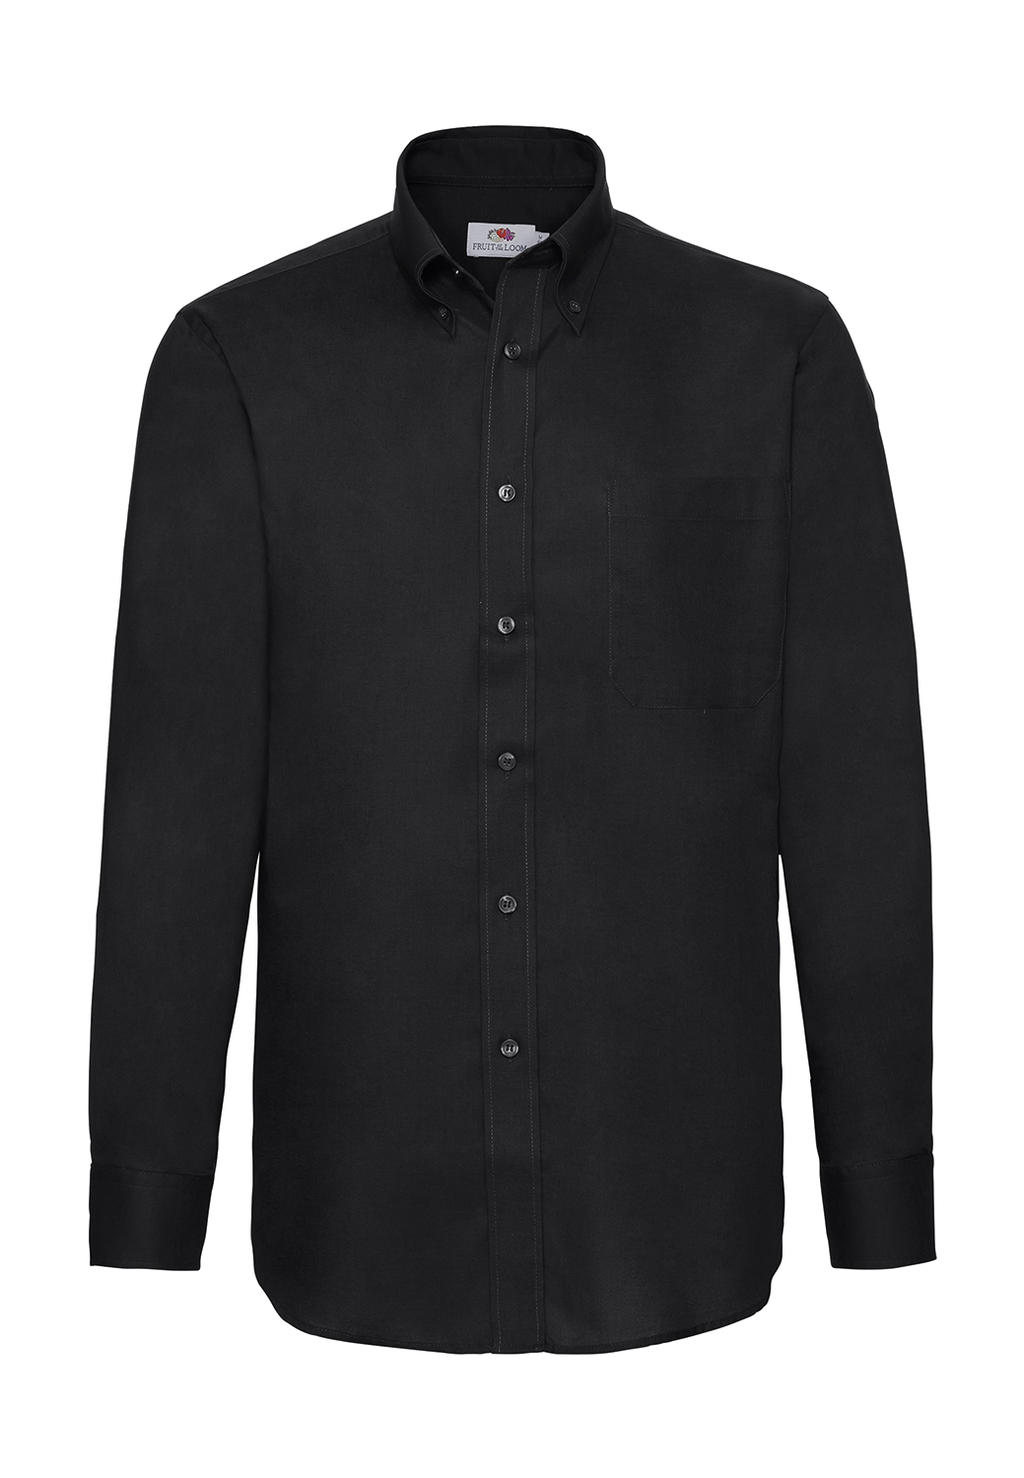 Pánska košeľa Oxford s dlhými rukávmi - black